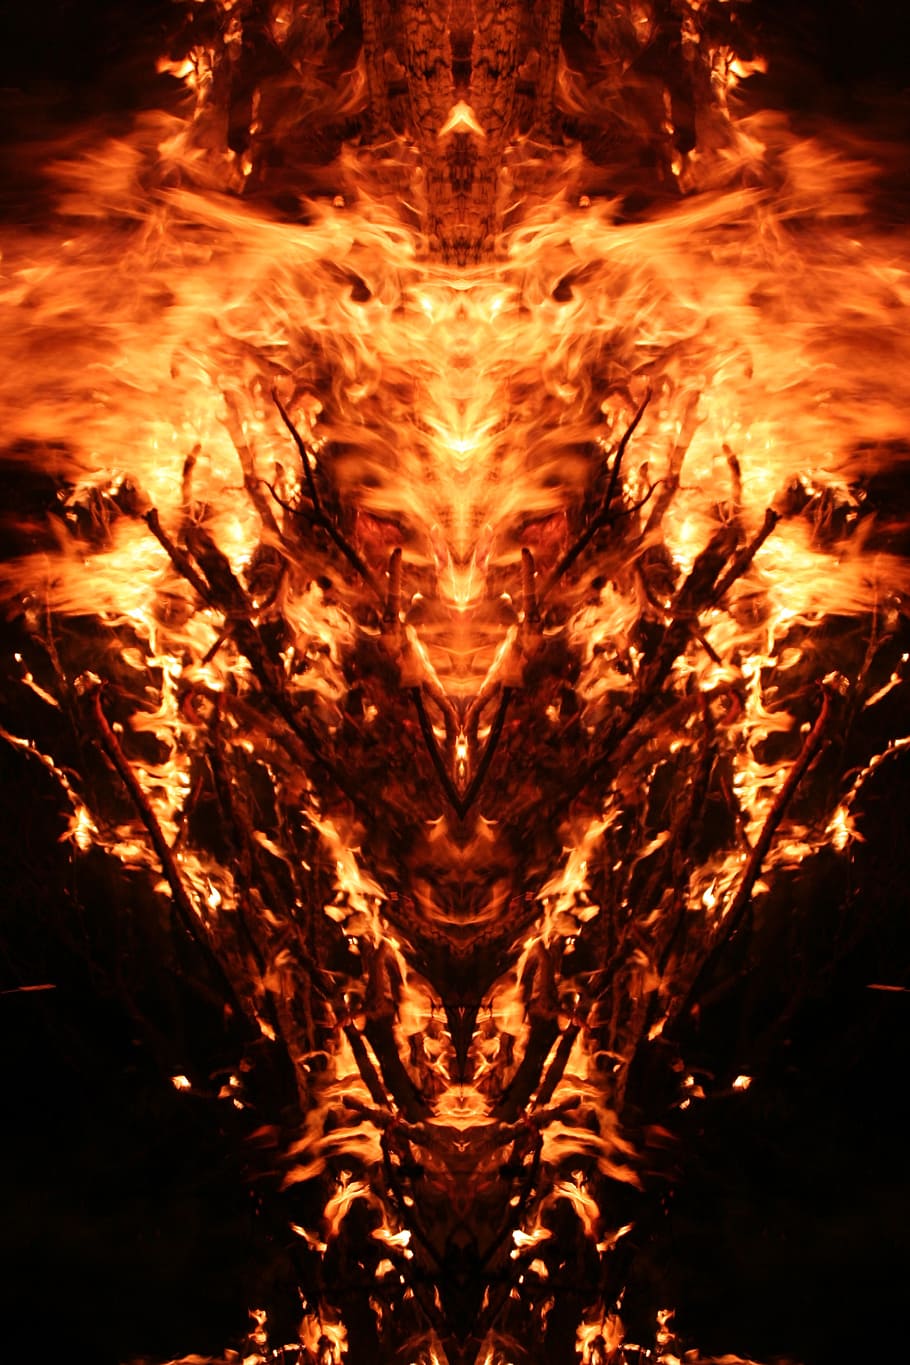 ドラゴンの炎のポスター, ミラーリング, 火, 神秘, 生き物, 熱, 炎, 残り火, ホット, キャンプファイヤー